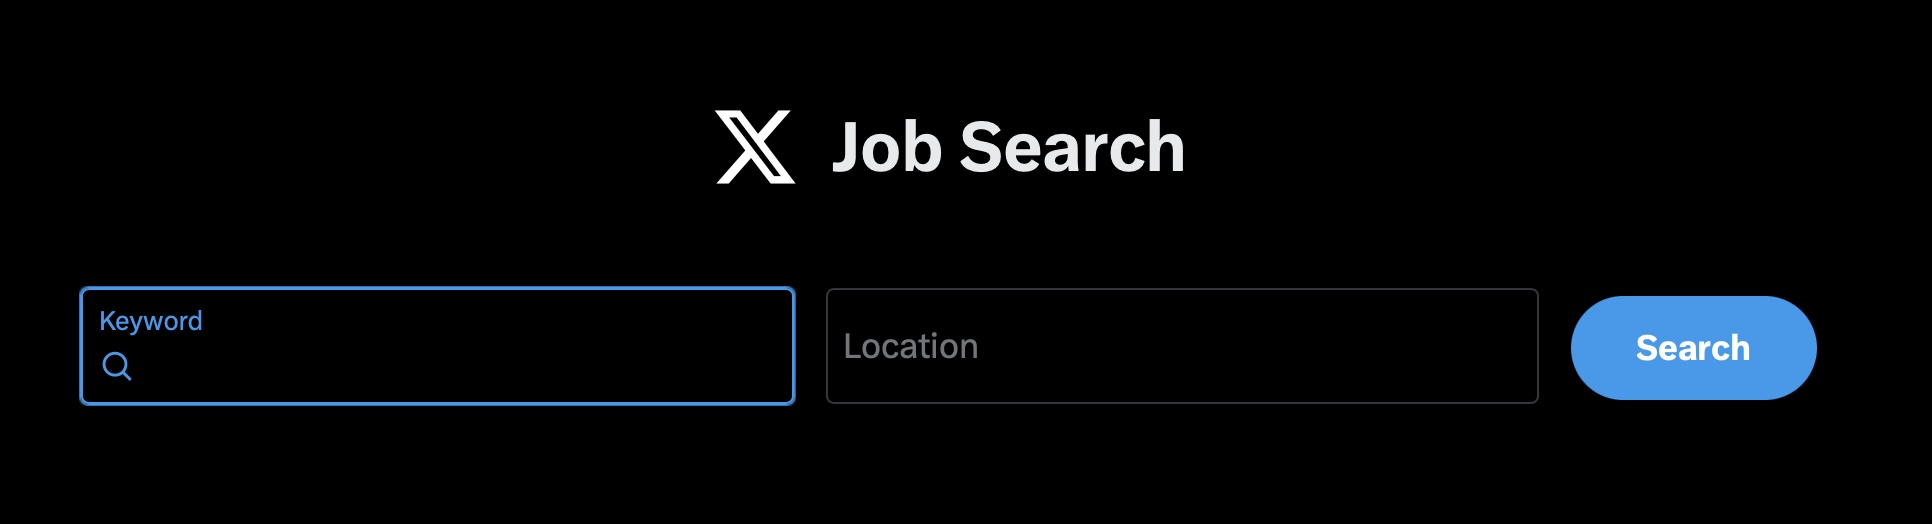 Job Search, busca de empregos no X, ex-Twitter